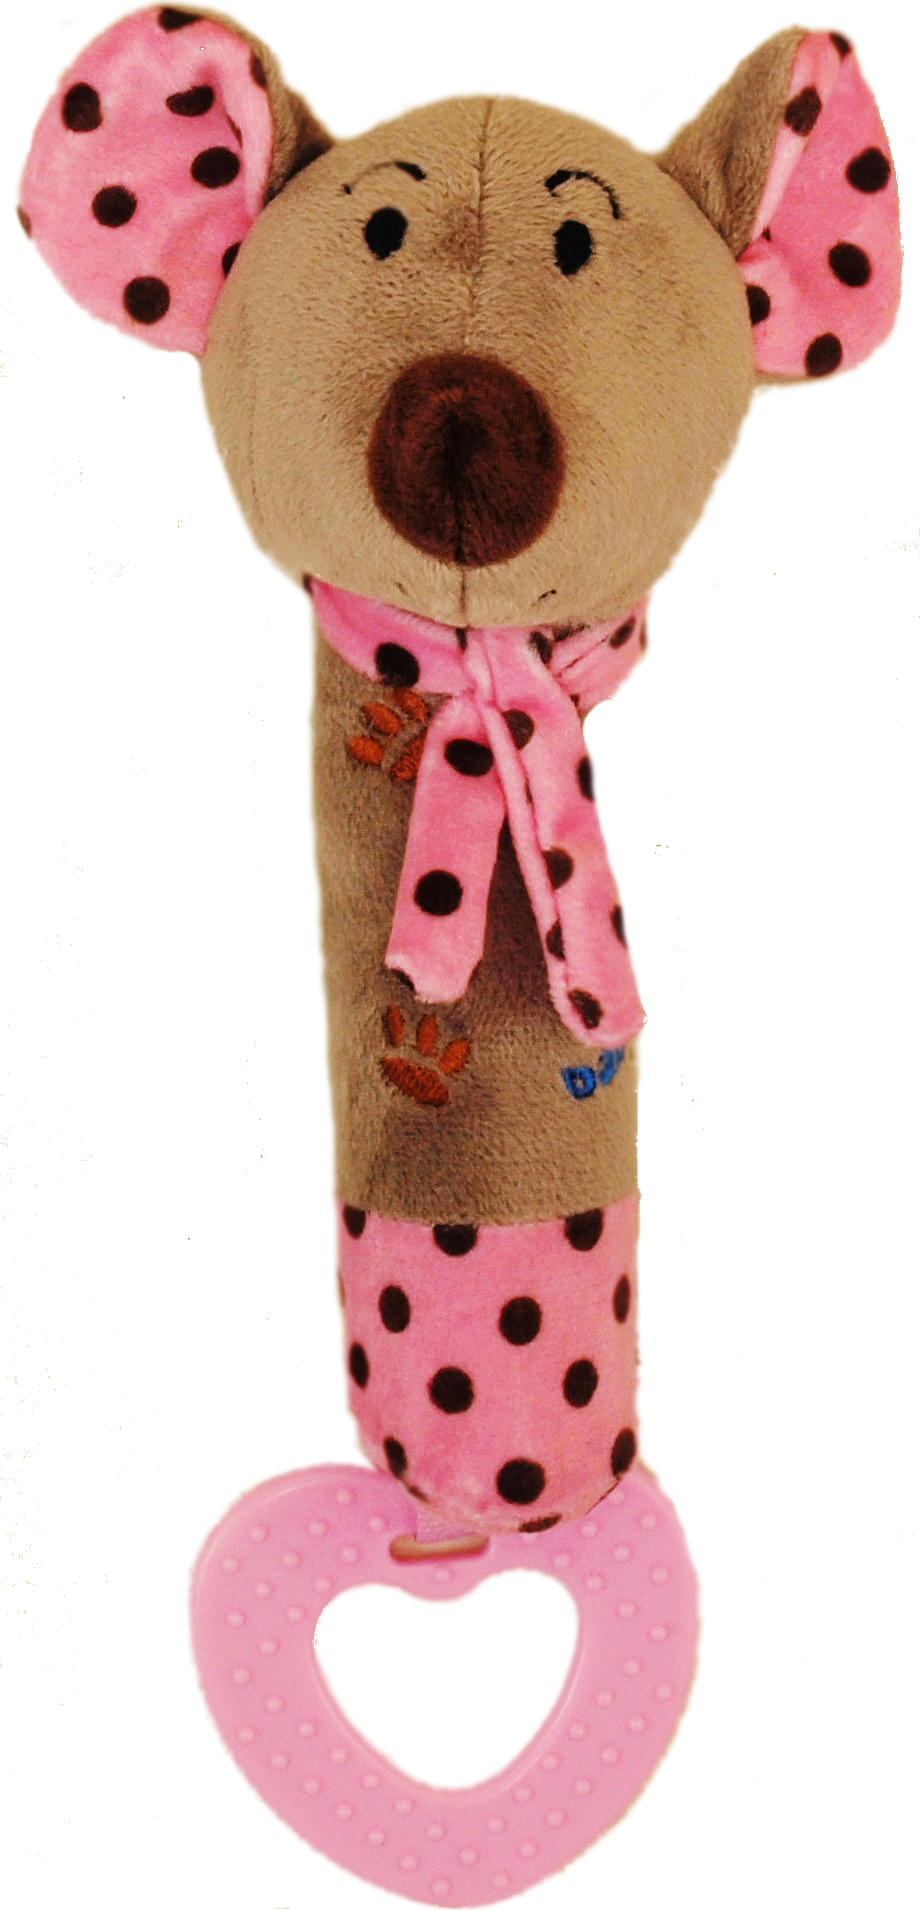 Dětská pískací plyšová hračka s kousátkem Baby Mix myška růžová